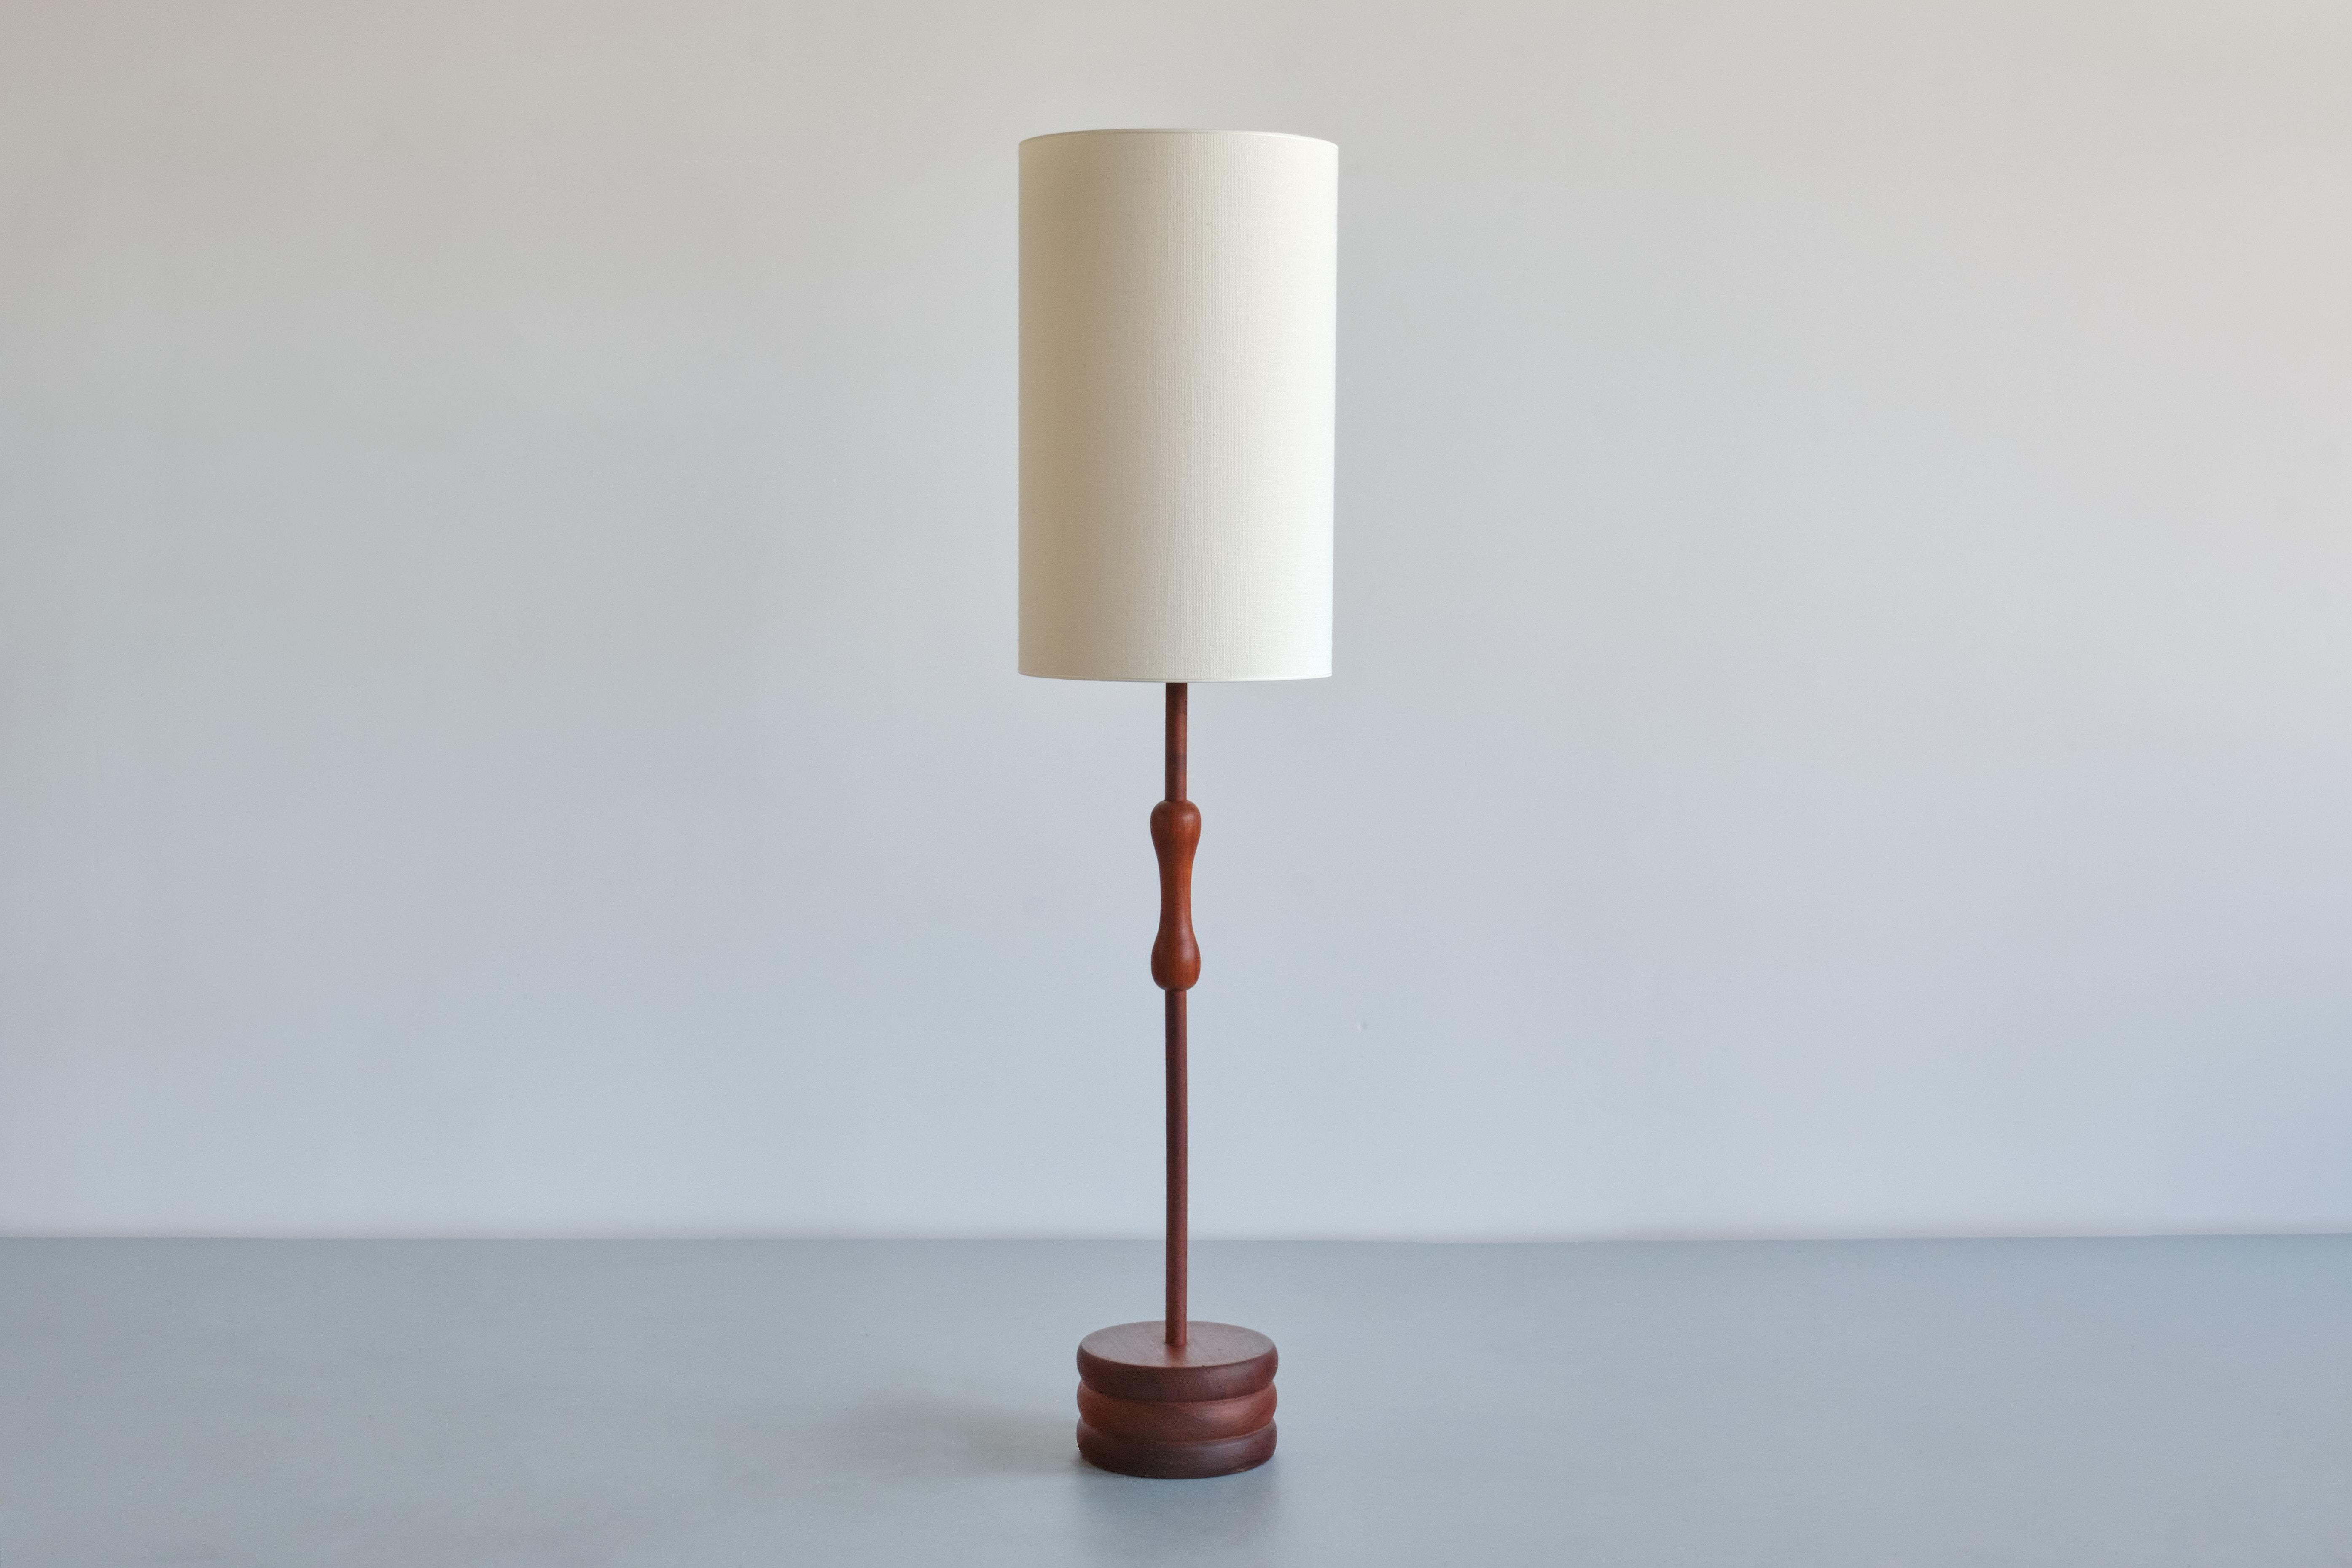 Ce remarquable lampadaire a été produit en Suède à la fin des années 1950.
Le design consiste en une base circulaire en bois de teck massif avec trois cercles sculptés en forme de disque. La tige centrale est à nouveau en bois de teck massif et